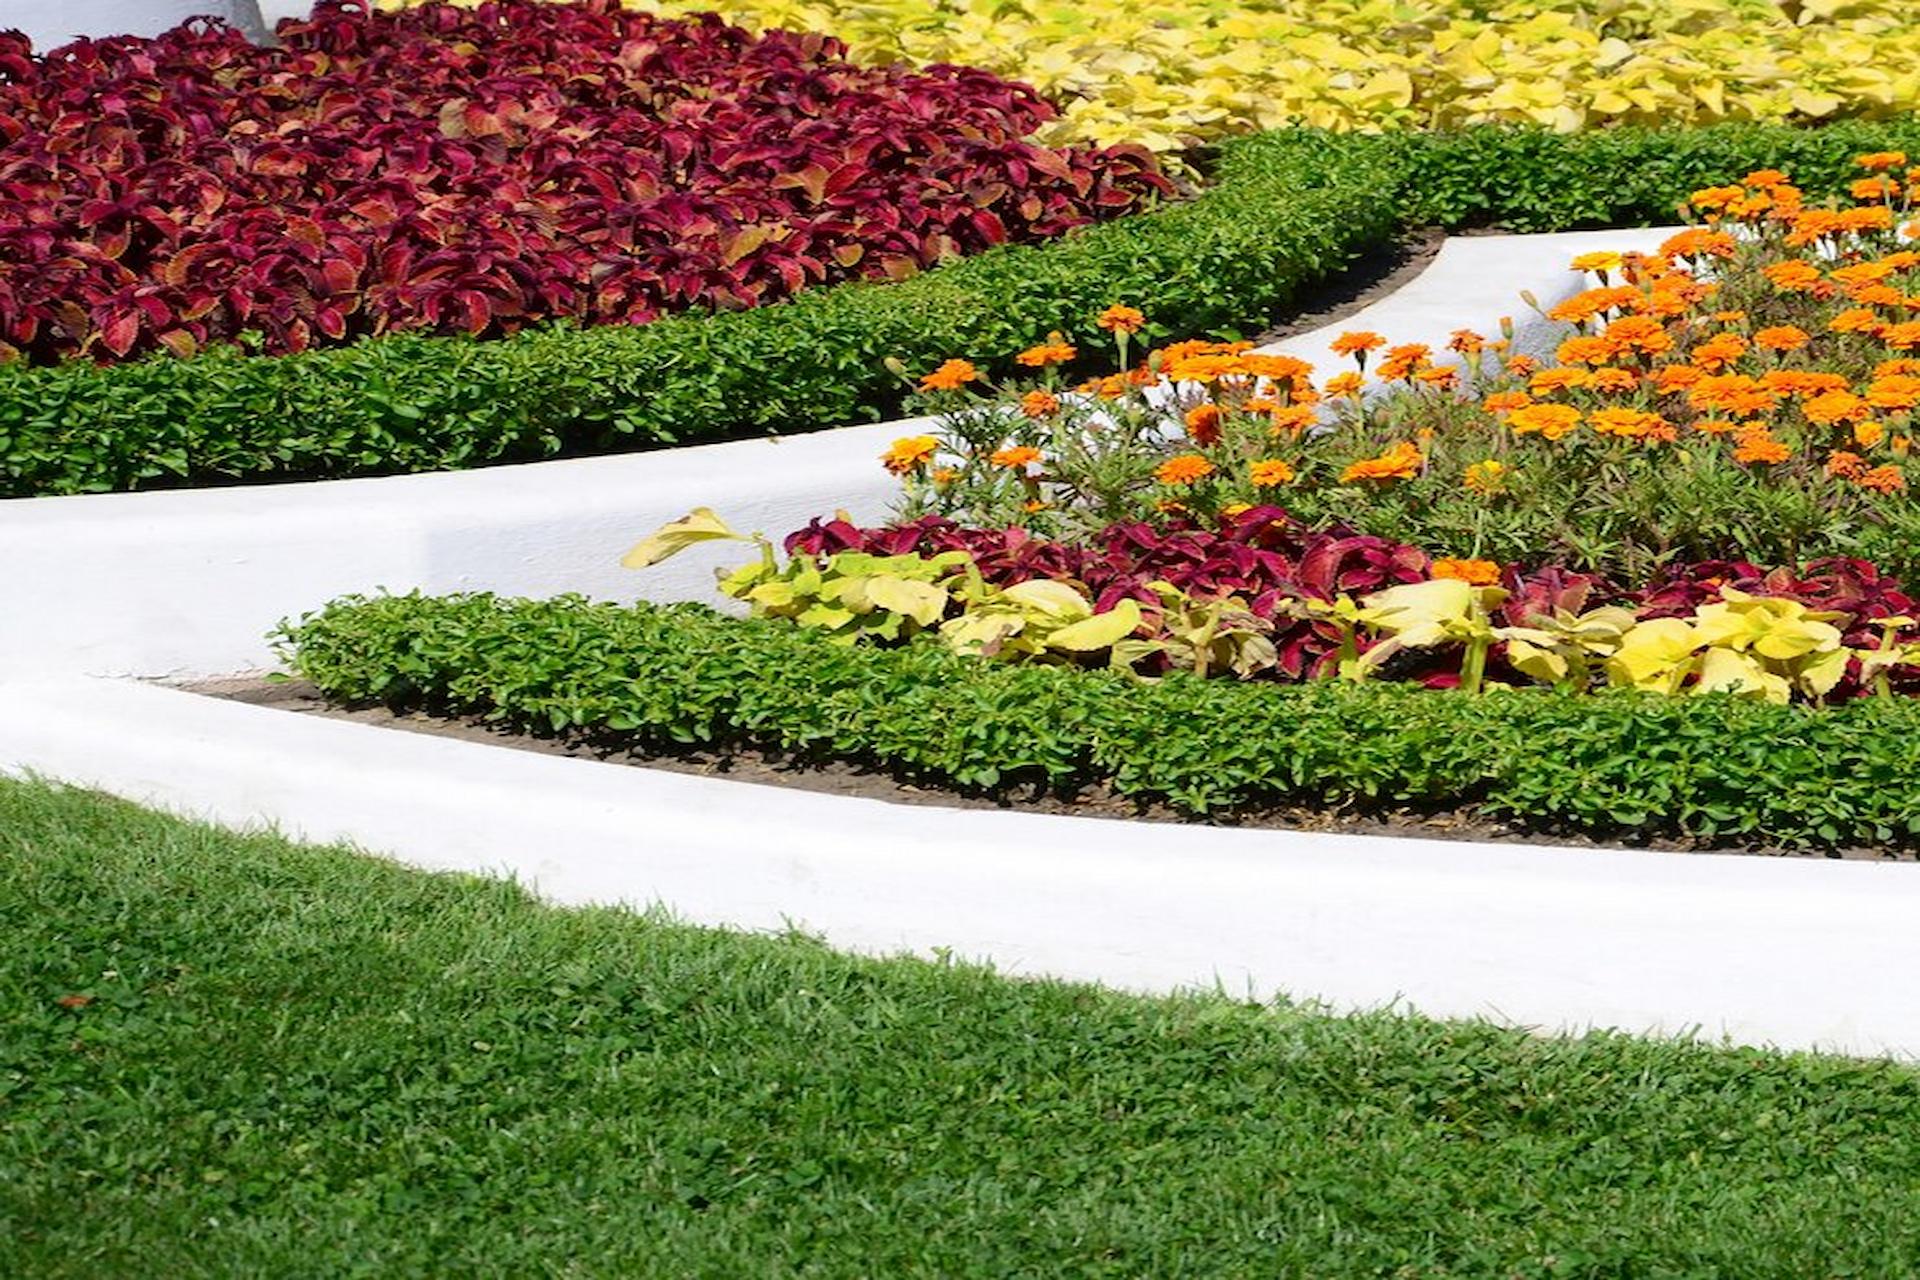 Blending Artificial Grass With Natural Flower Beds For A Stunning Garden Oasis